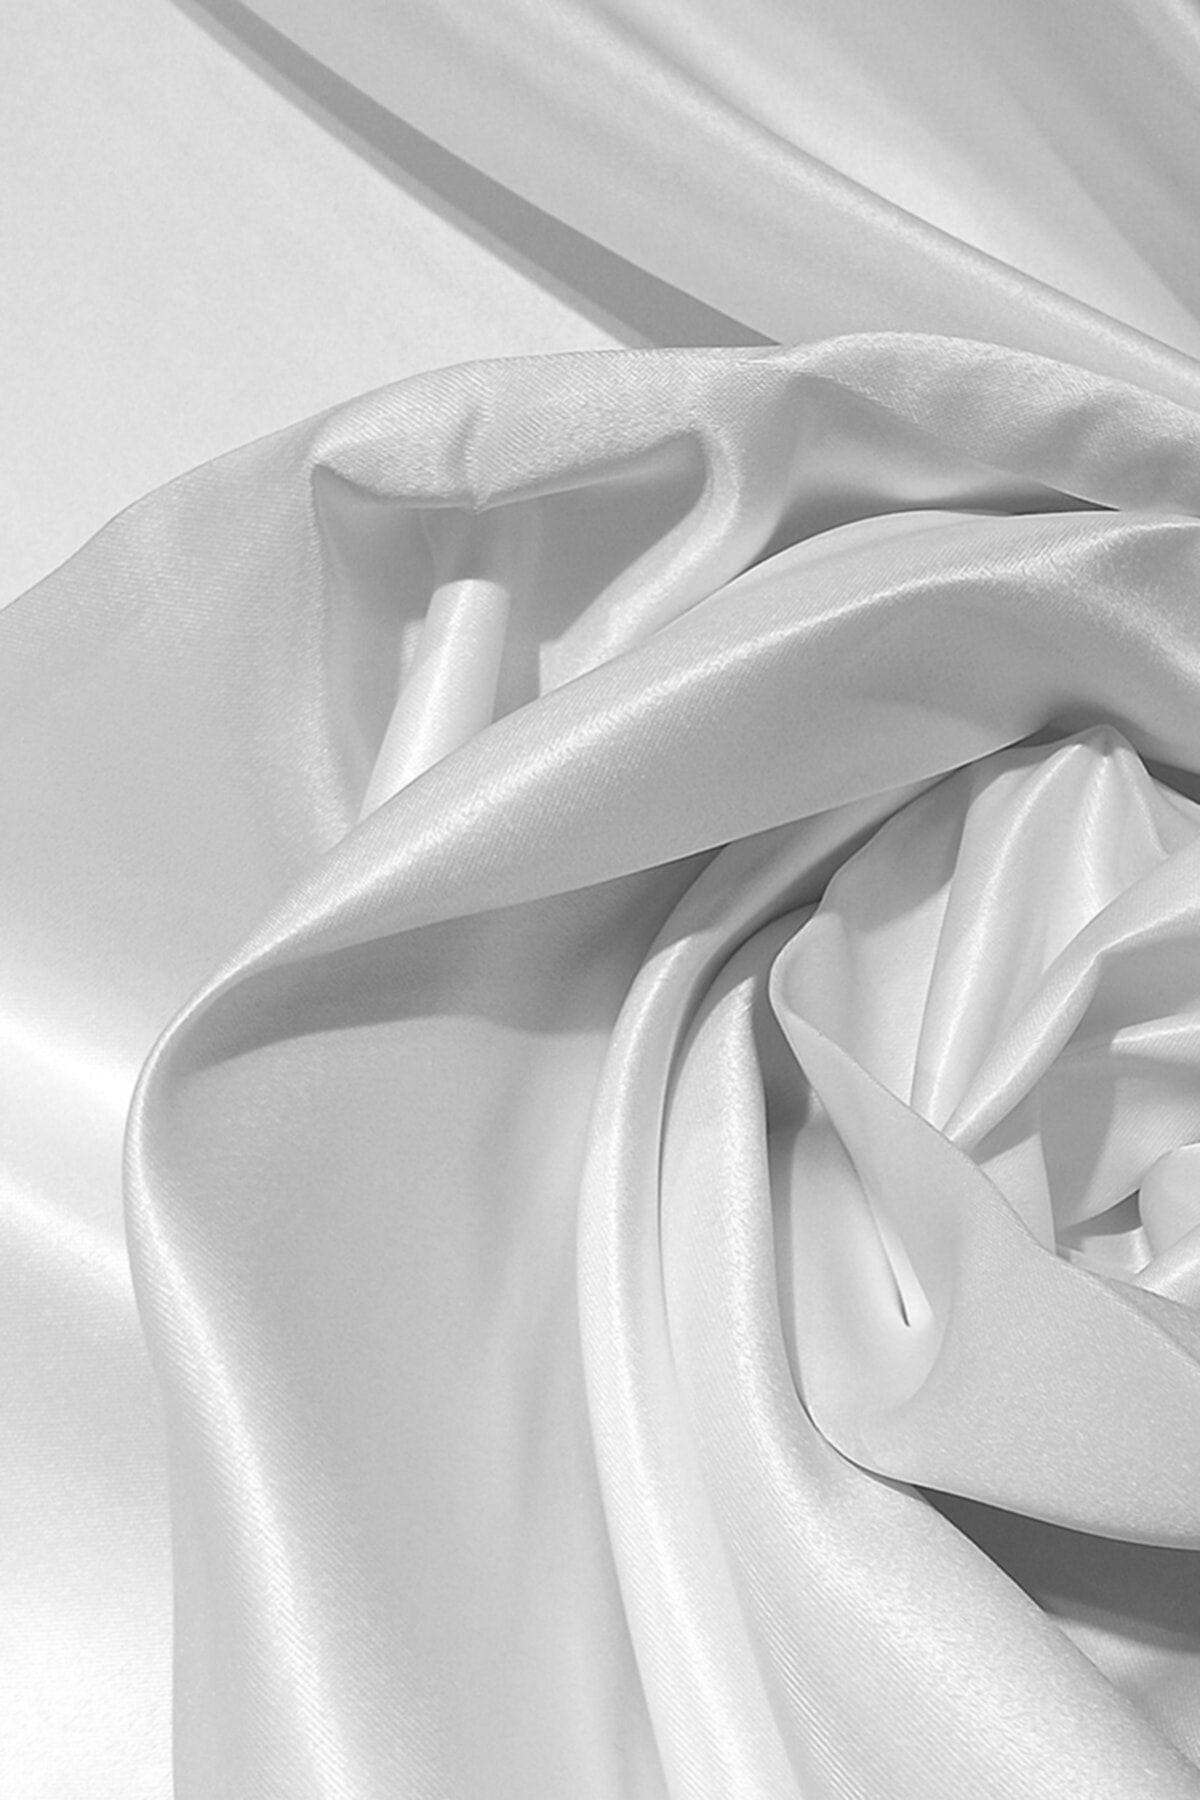 Leminor Taç Saten Kalın Işık Geçirmez Güneşlik Sık  Yeni Moda Sezon Ütü Istemez Perde Kar Beyaz 300x200 cm